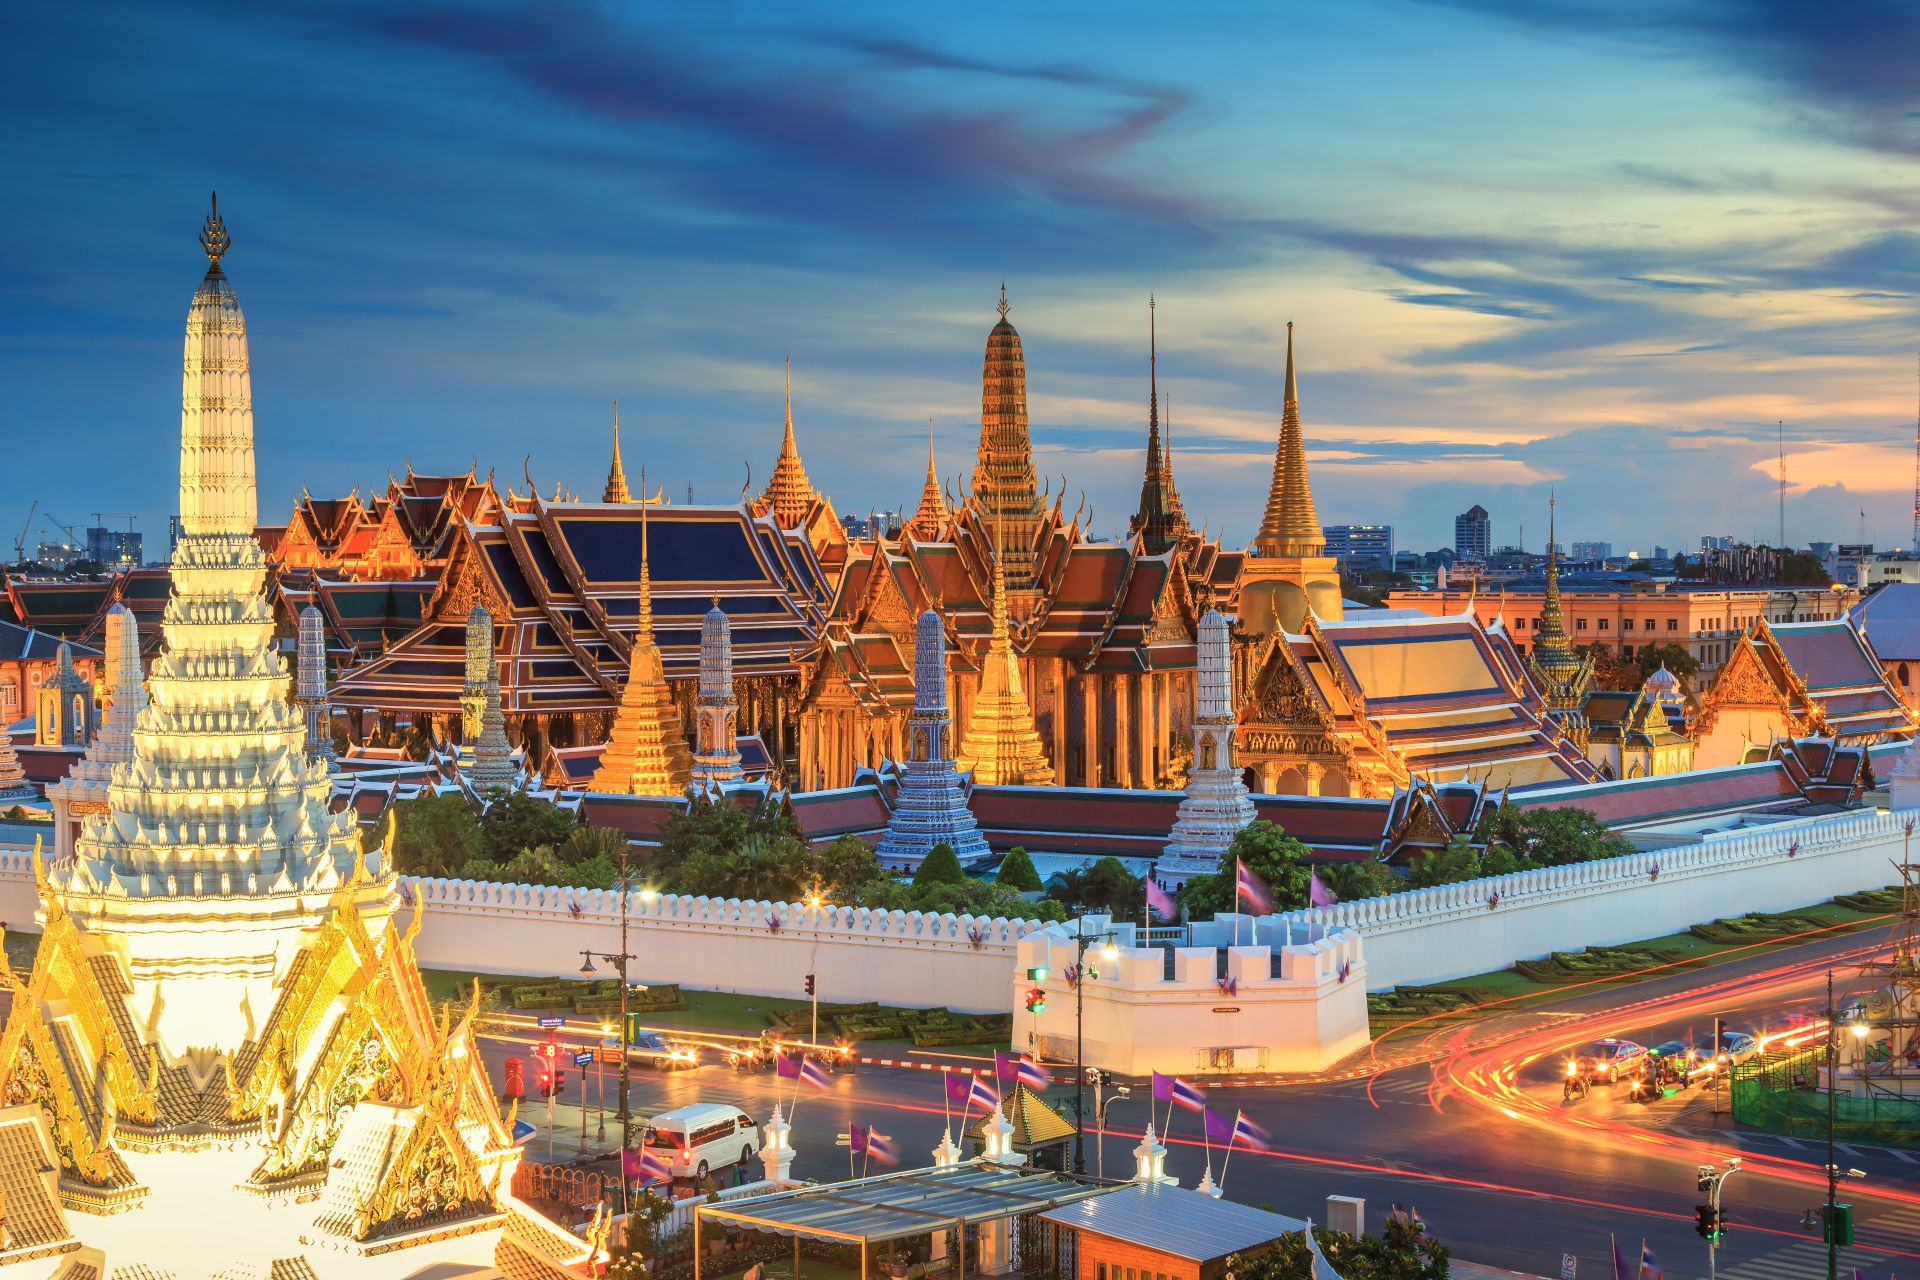 Gran Palacio y Wat phra keaw al atardecer Bangkok